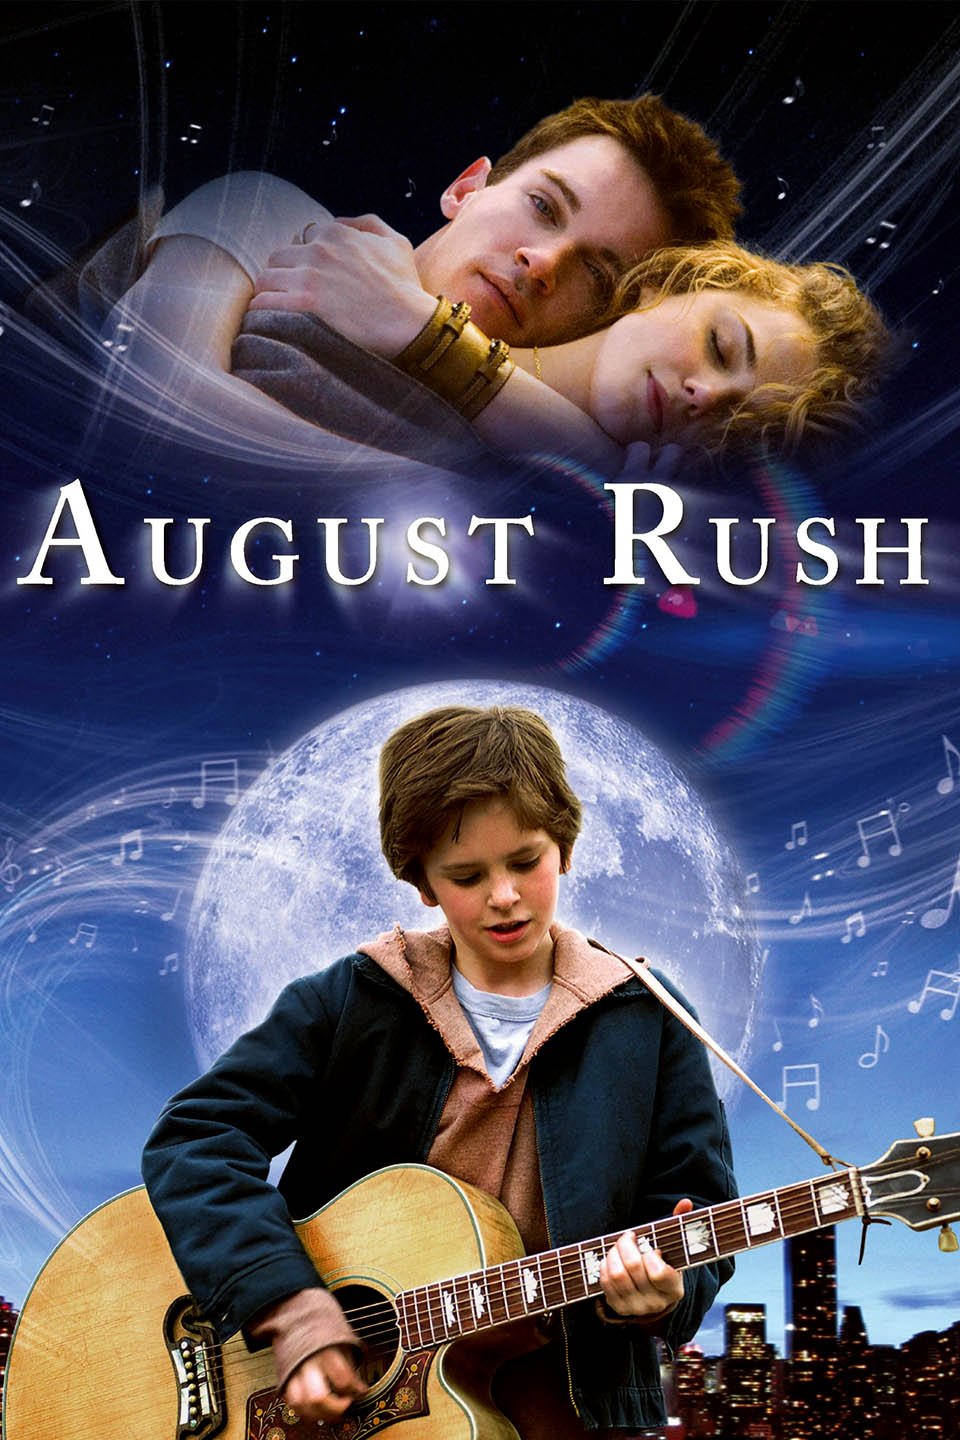 ดูหนังออนไลน์ฟรี August Rush (2007) ทั้งชีวิตขอมีแต่เสียงเพลง หนังเต็มเรื่อง หนังมาสเตอร์ ดูหนังHD ดูหนังออนไลน์ ดูหนังใหม่